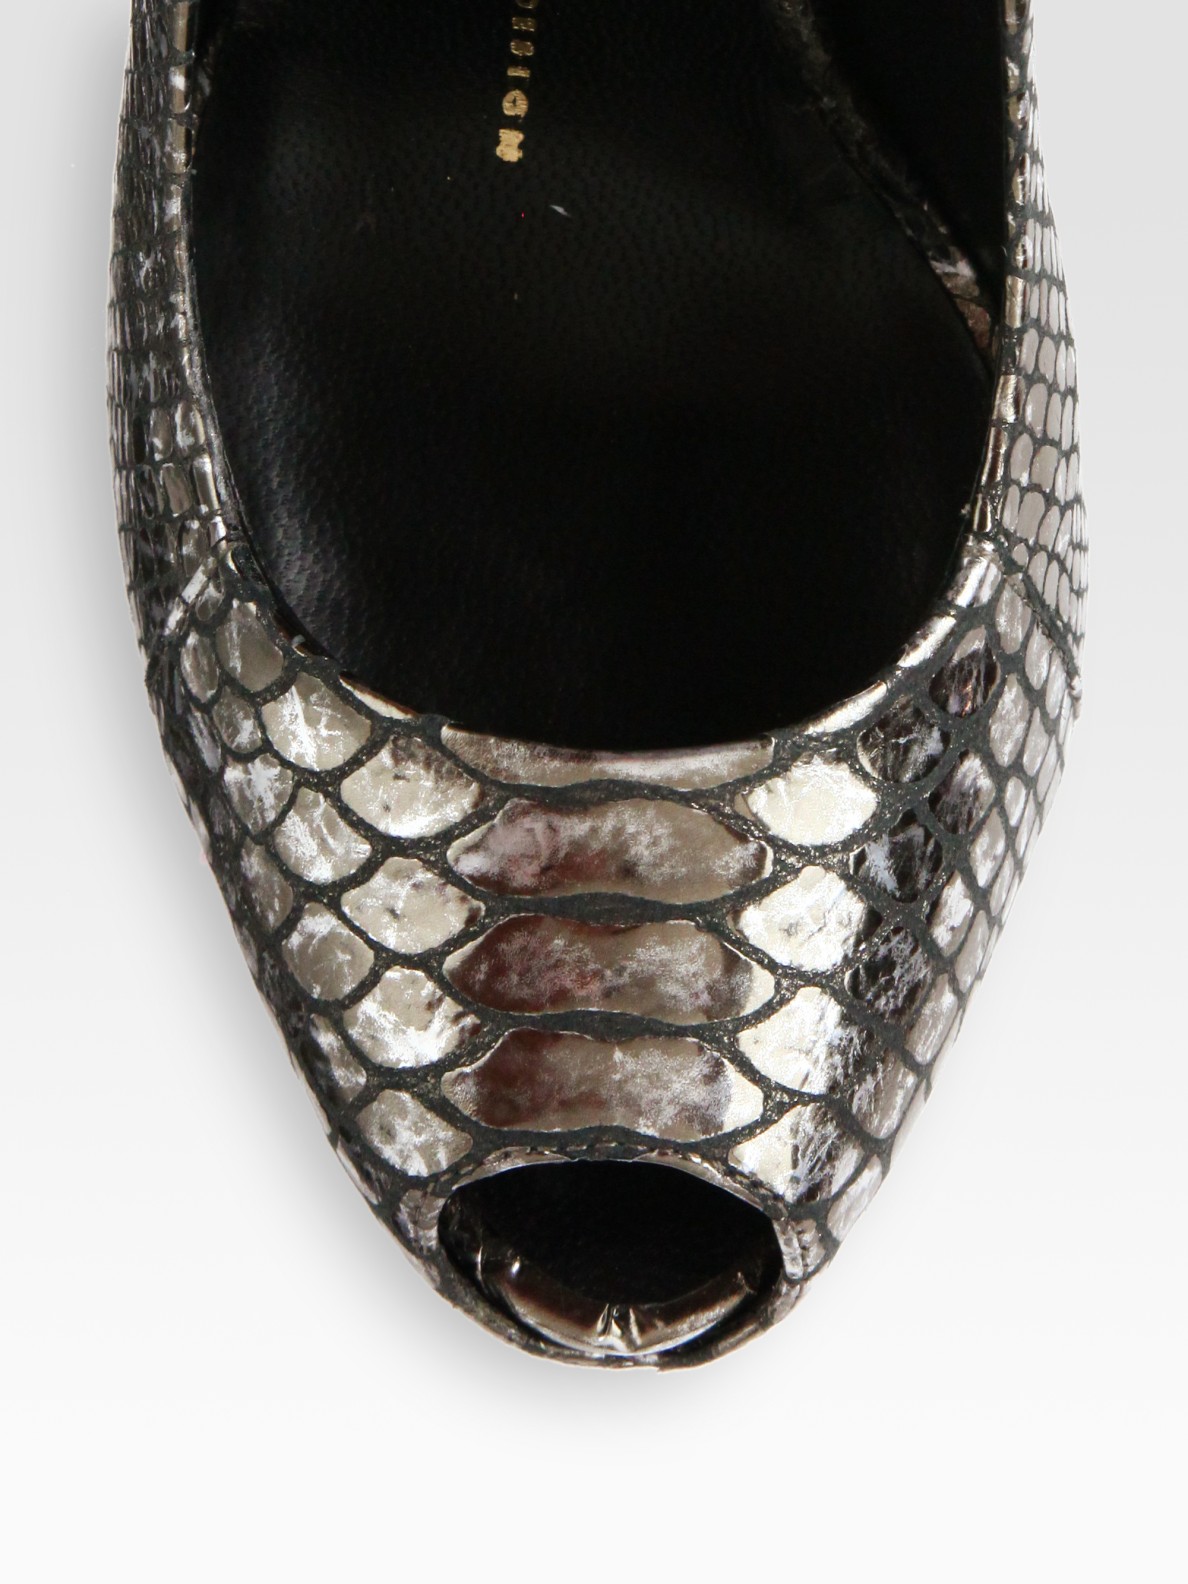 Lyst - Giuseppe zanotti Snakeprint Metallic Leather Peep Toe Pumps in ...